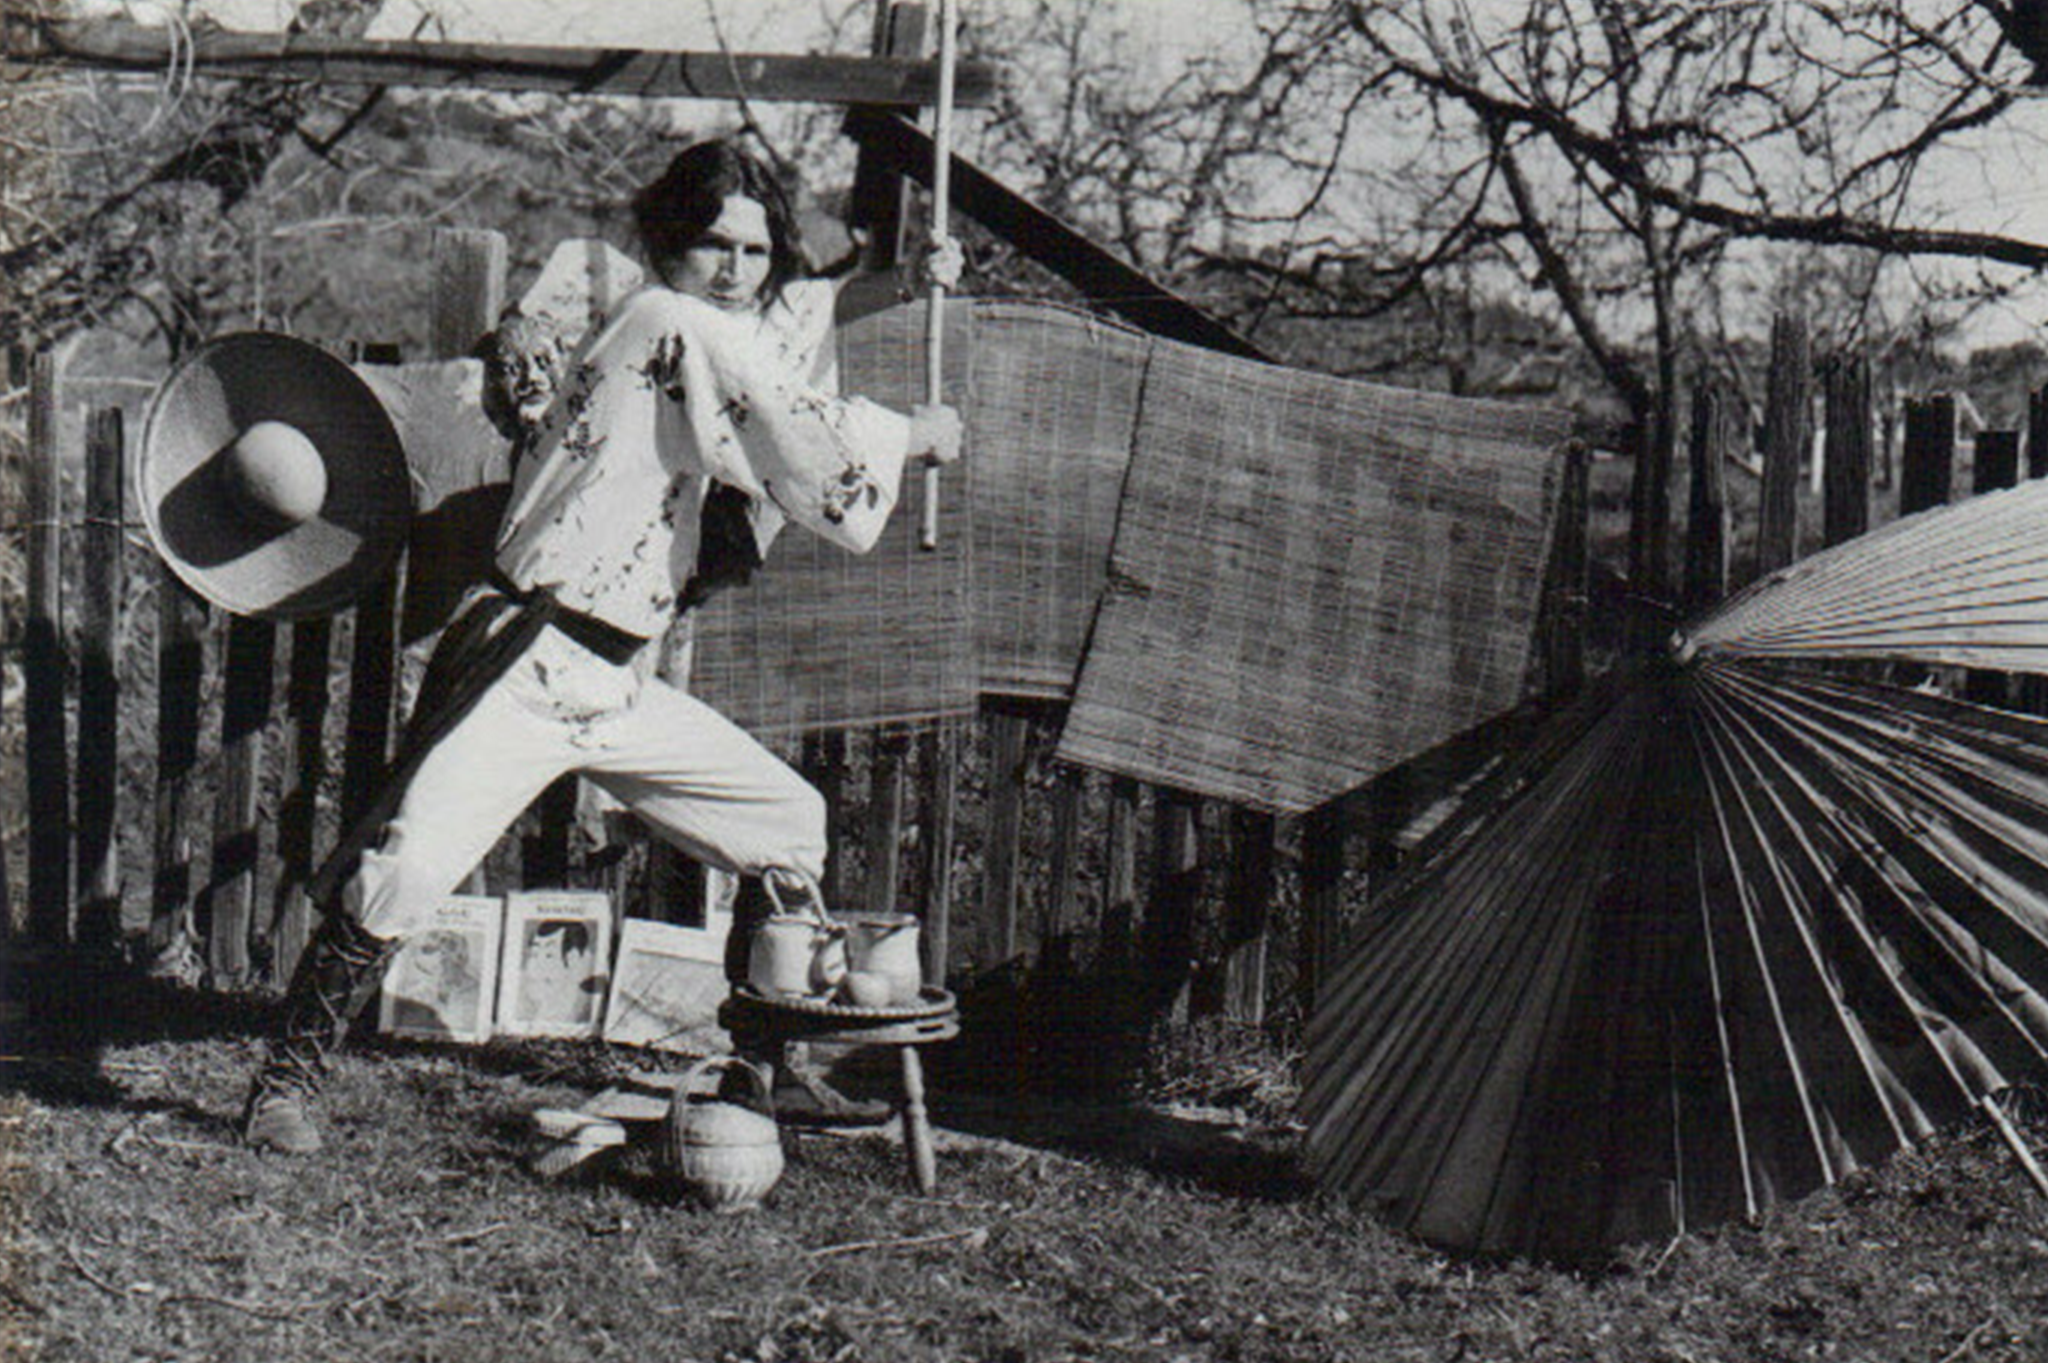 Alberto san, ilustrando el libro “La Fuente Mágica”, sobre shoguns, samuráis y geishas, Comunidad Pomo Tierra, Mendocino California. Foto: Mercedes Gálvez.